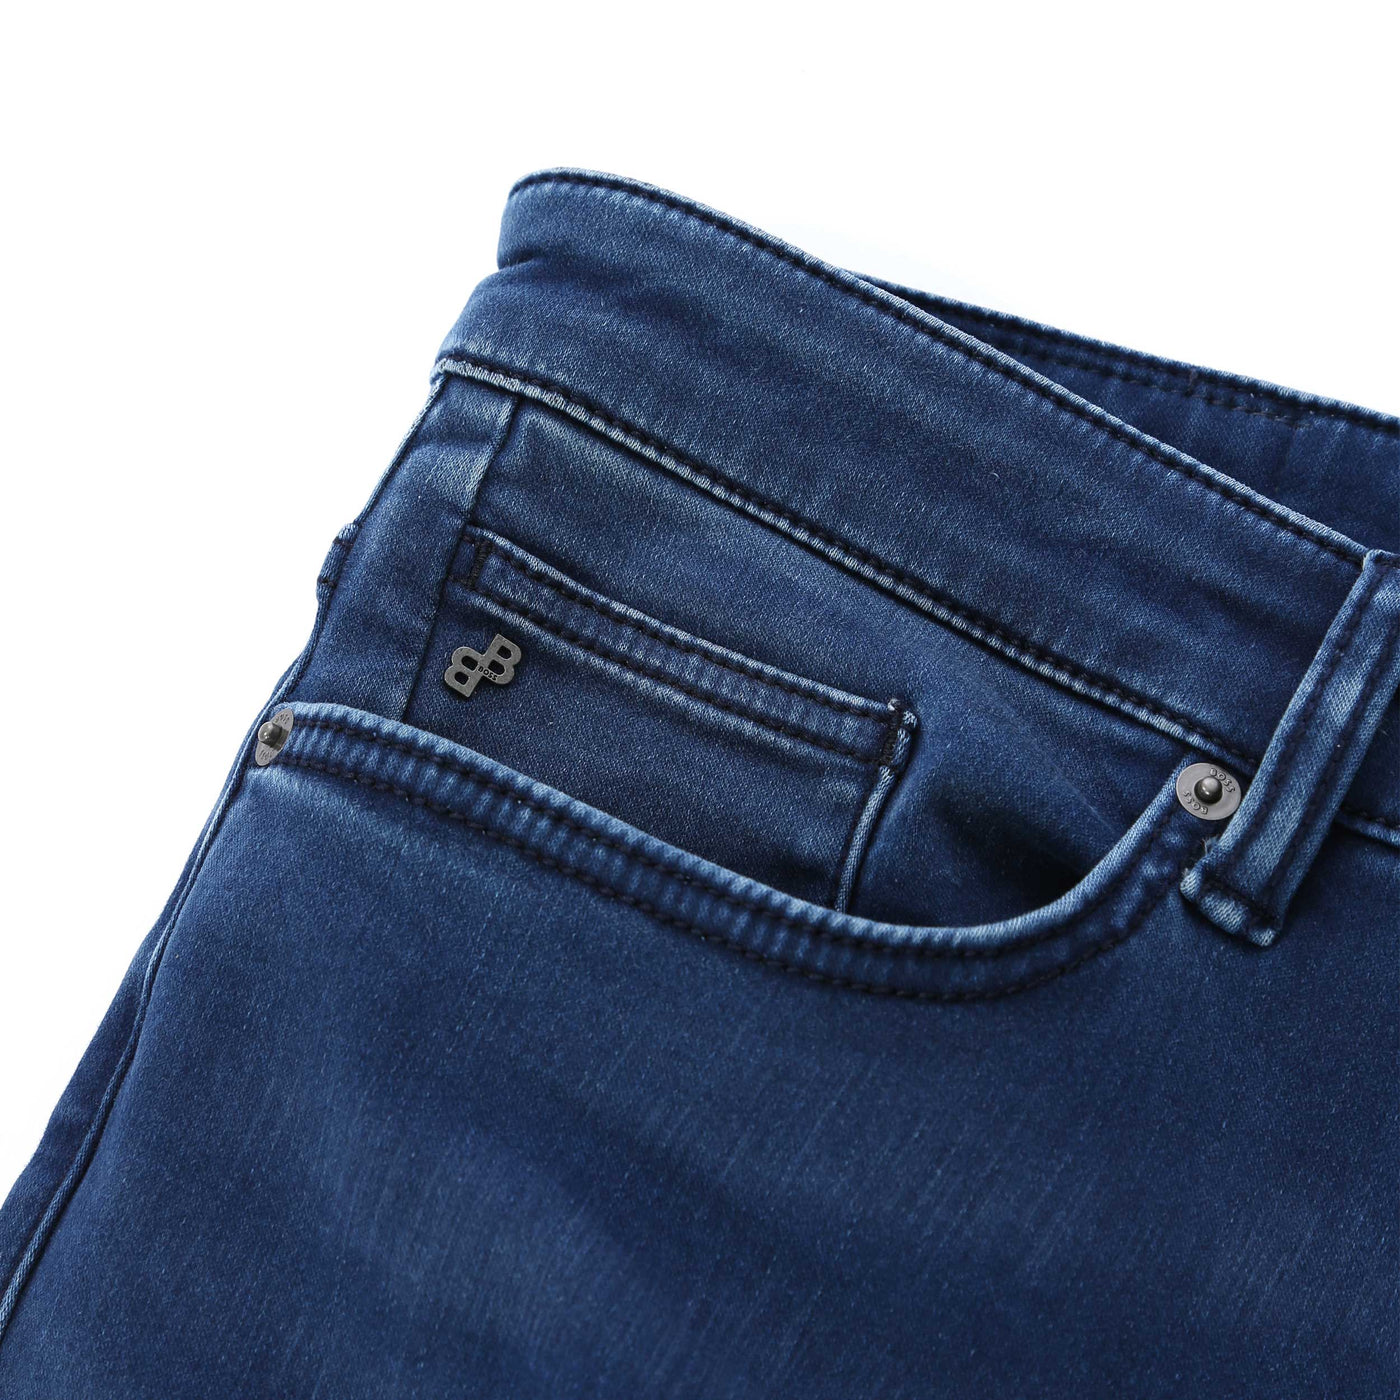 BOSS Delaware3-1 Jean in Mid Blue Denim Pocket Detail